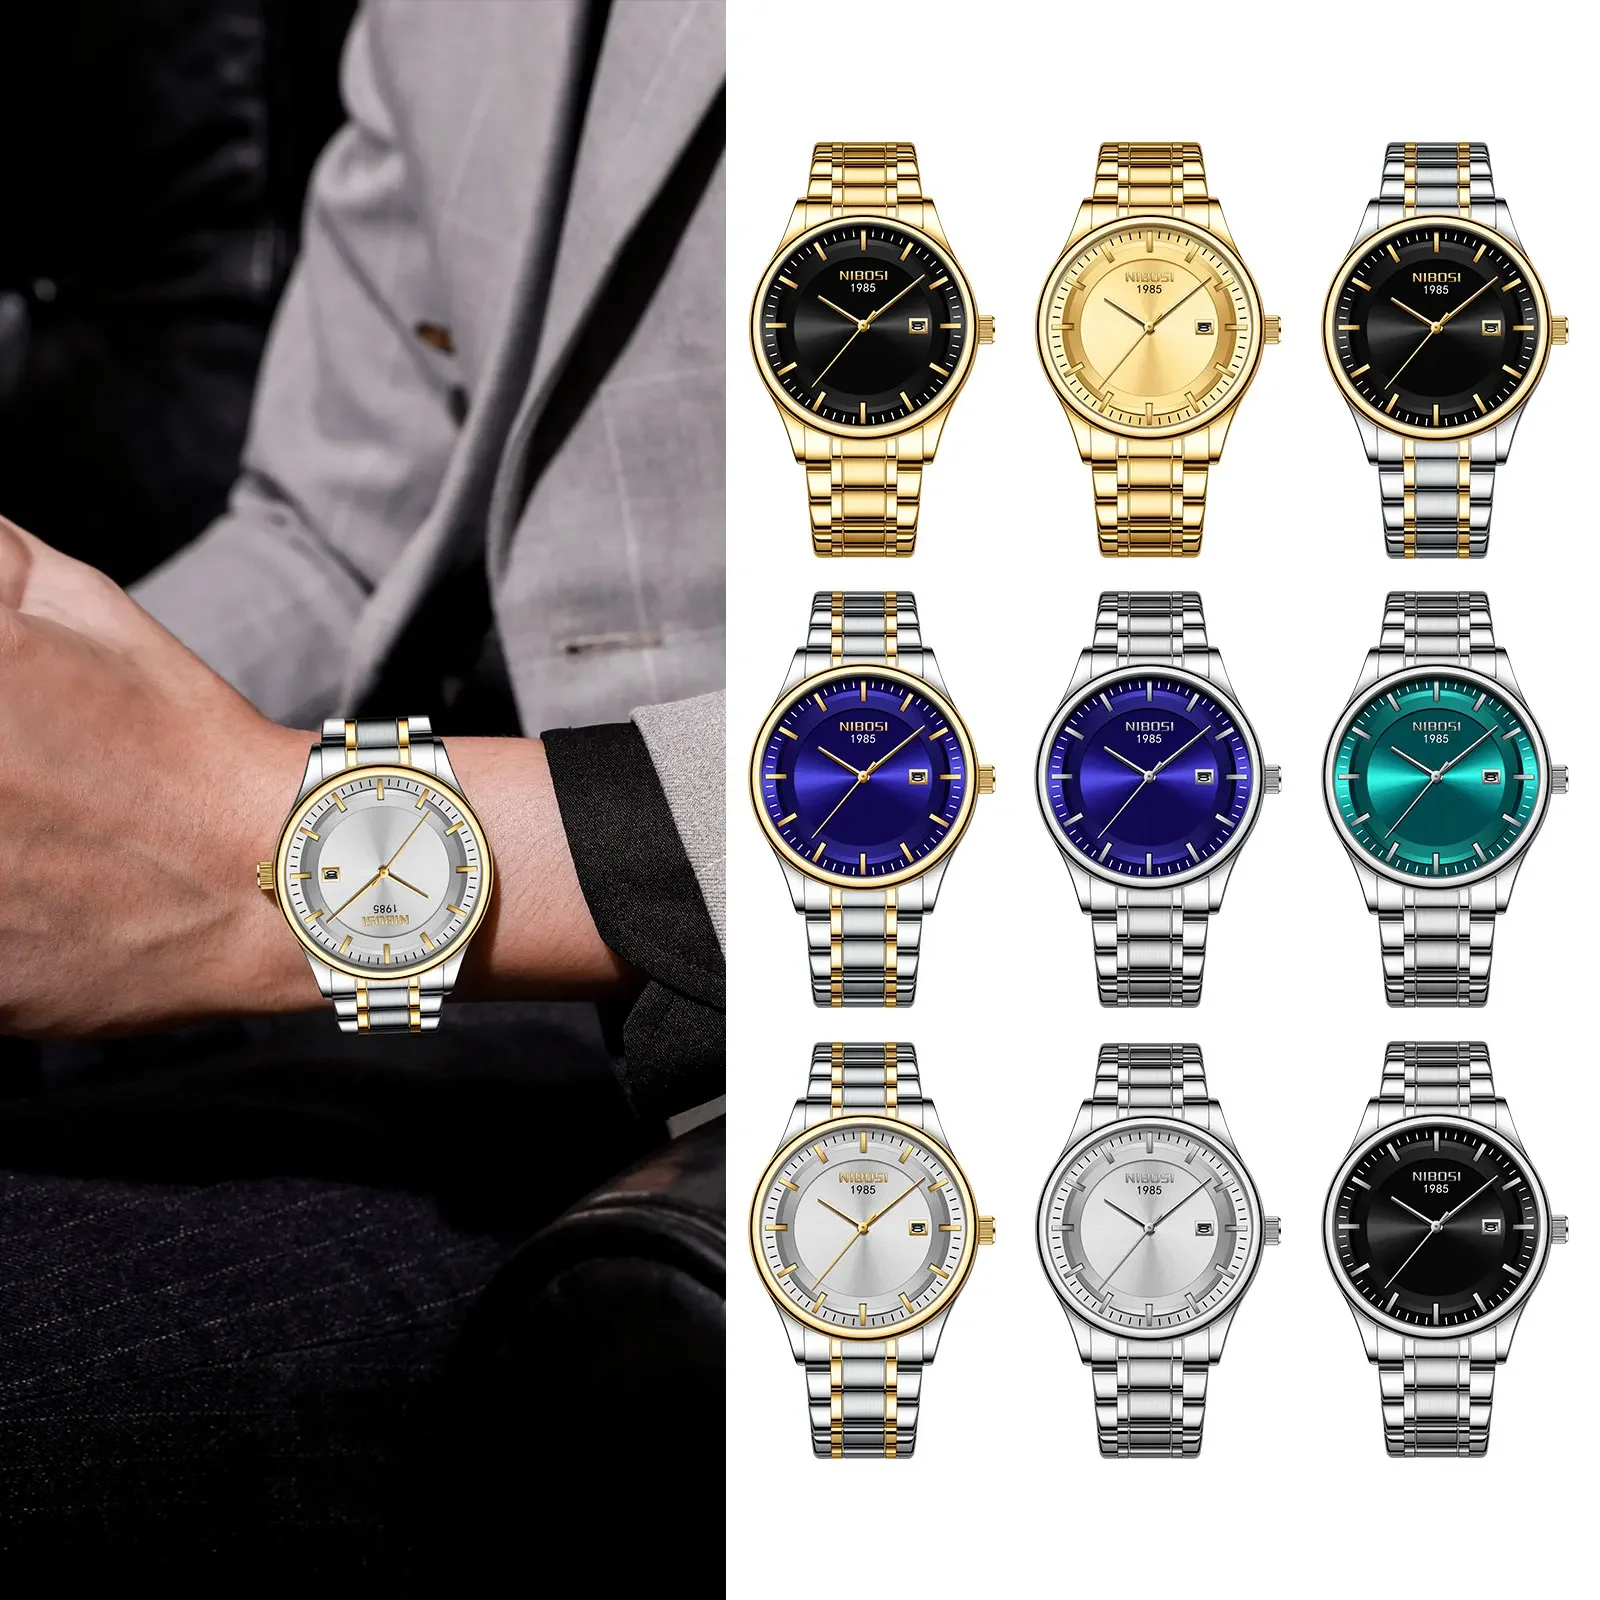 

Часы наручные NIBOSI Мужские кварцевые, простые водонепроницаемые в деловом стиле, с календарем, с браслетом из нержавеющей стали